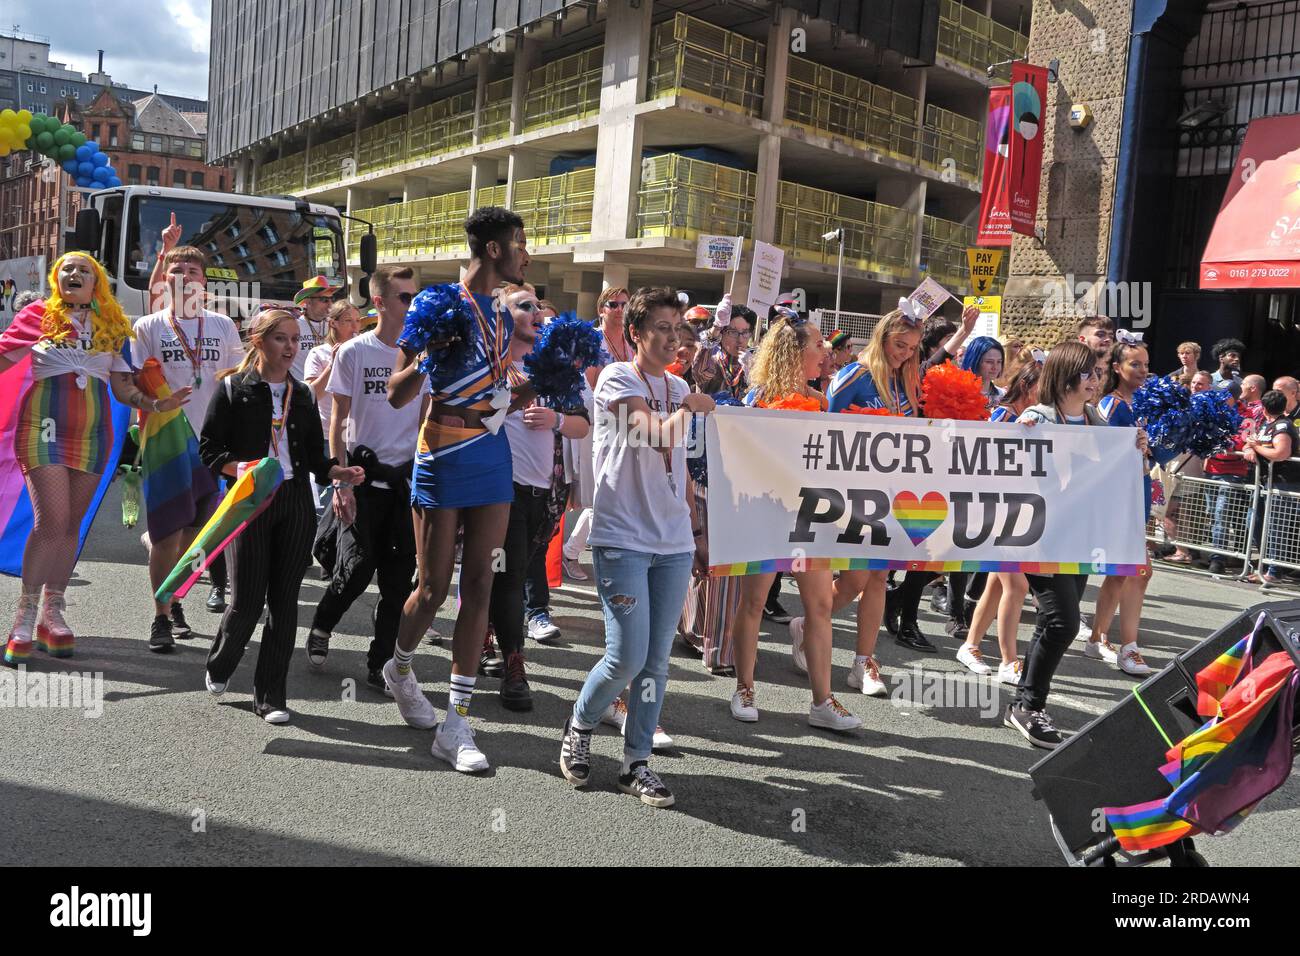 MCR a rencontré l'université à Manchester Pride Festival parade, 36 Whitworth Street, Manchester, Angleterre, Royaume-Uni, M1 3NR Banque D'Images